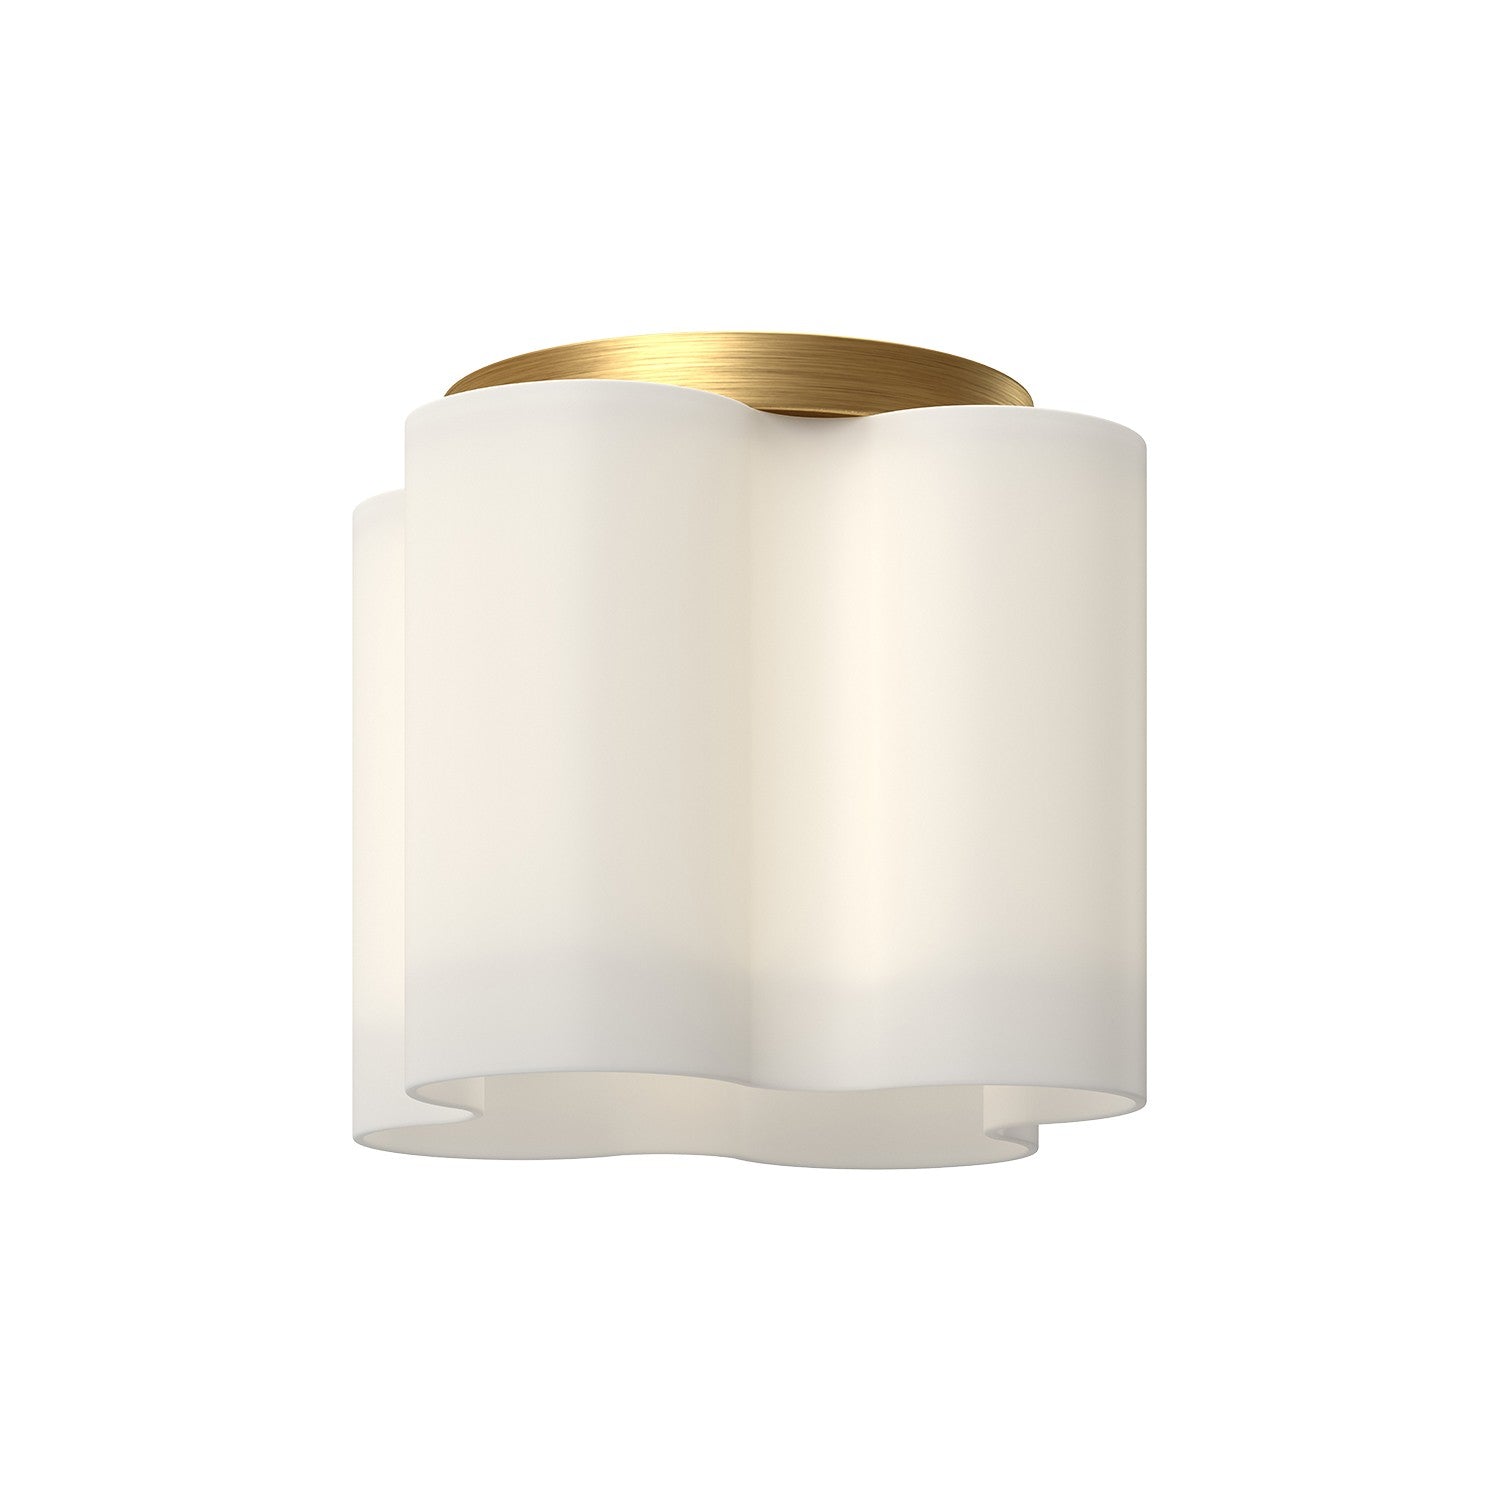 Kuzco Lighting - FM54809-BG/OP - LED Flush Mount - Clover - Brushed Gold/Opal Glass